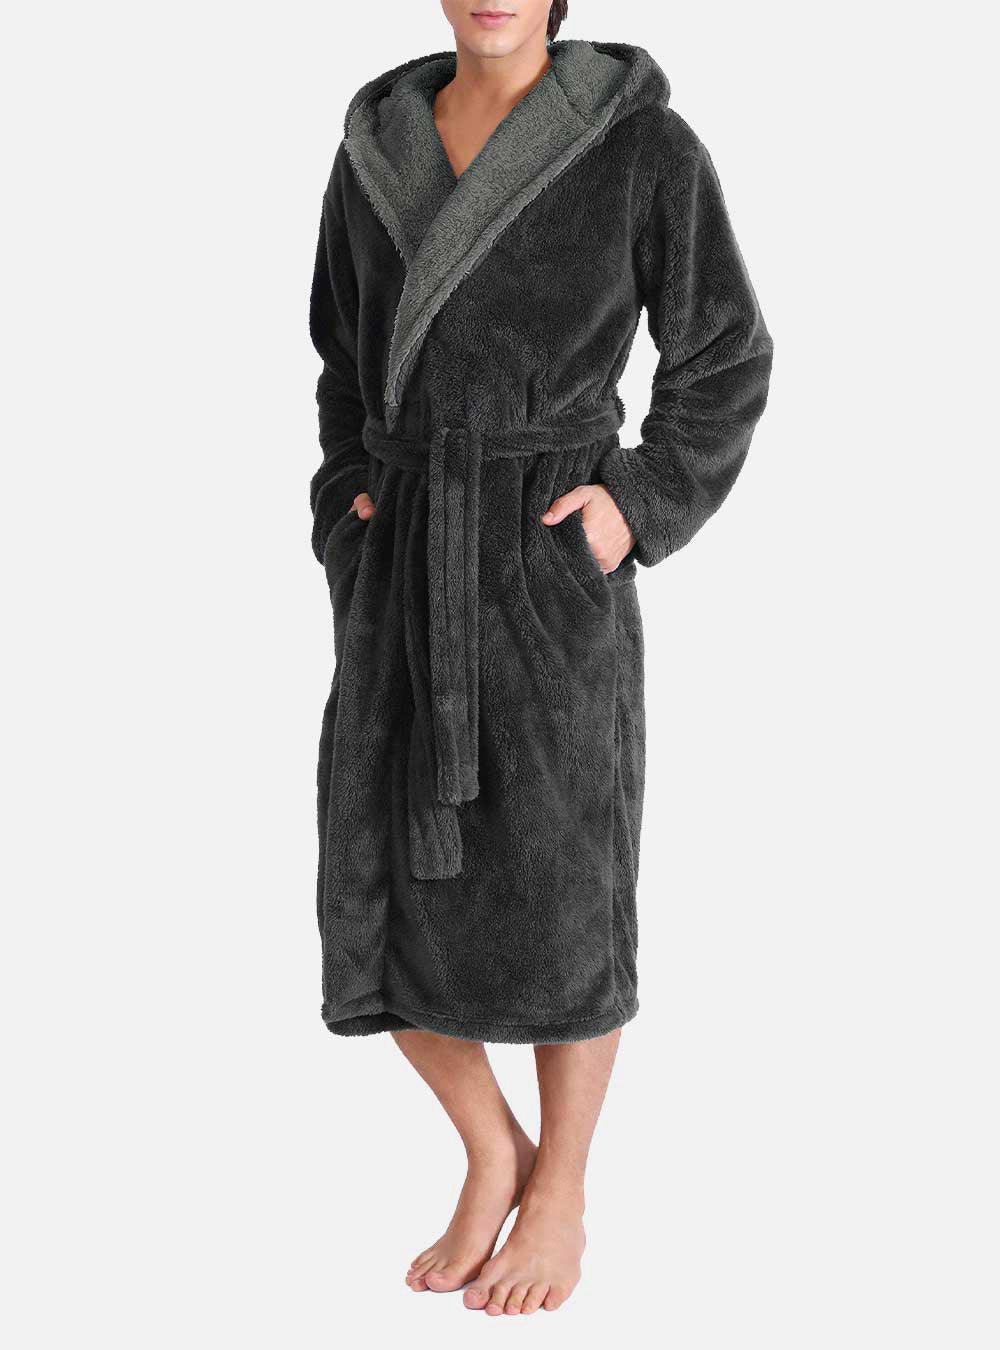 Buy OksunDressing Gown Women Full Length Robe Plus Size Fleece Winter Warm  Bathrobe Online at desertcartINDIA